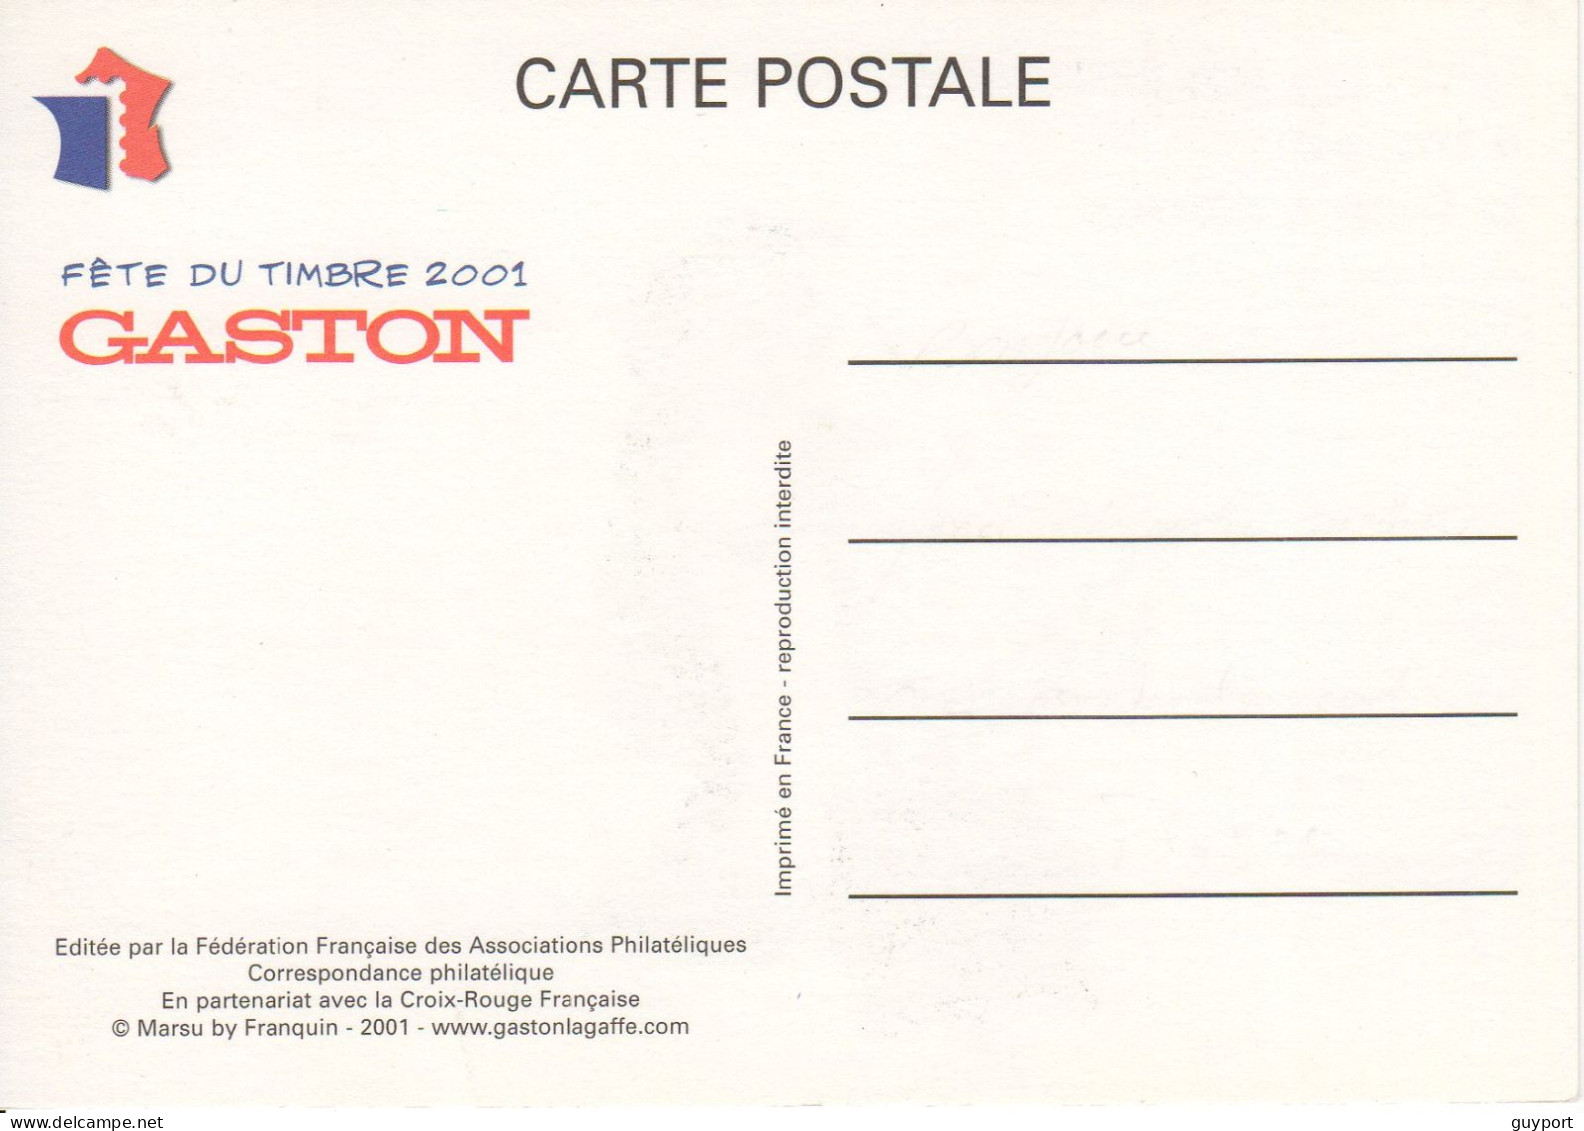 Gaston Lagaffe A Inventé Le Frein à Disque. Fête Du Timbre 2001 - Comics